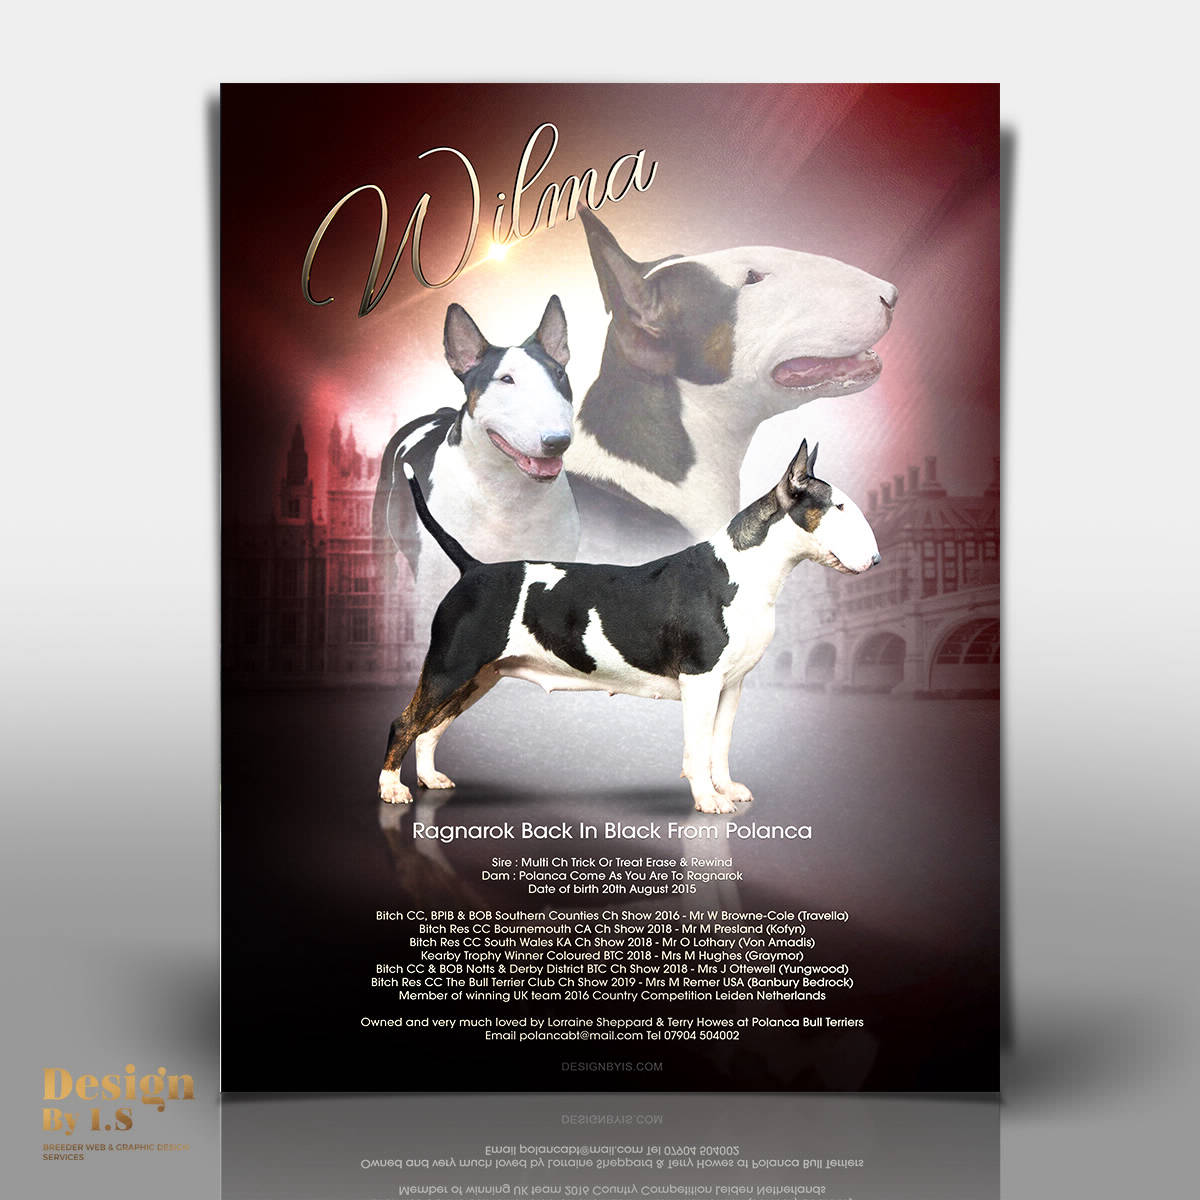 Bull terrier magazine Advert